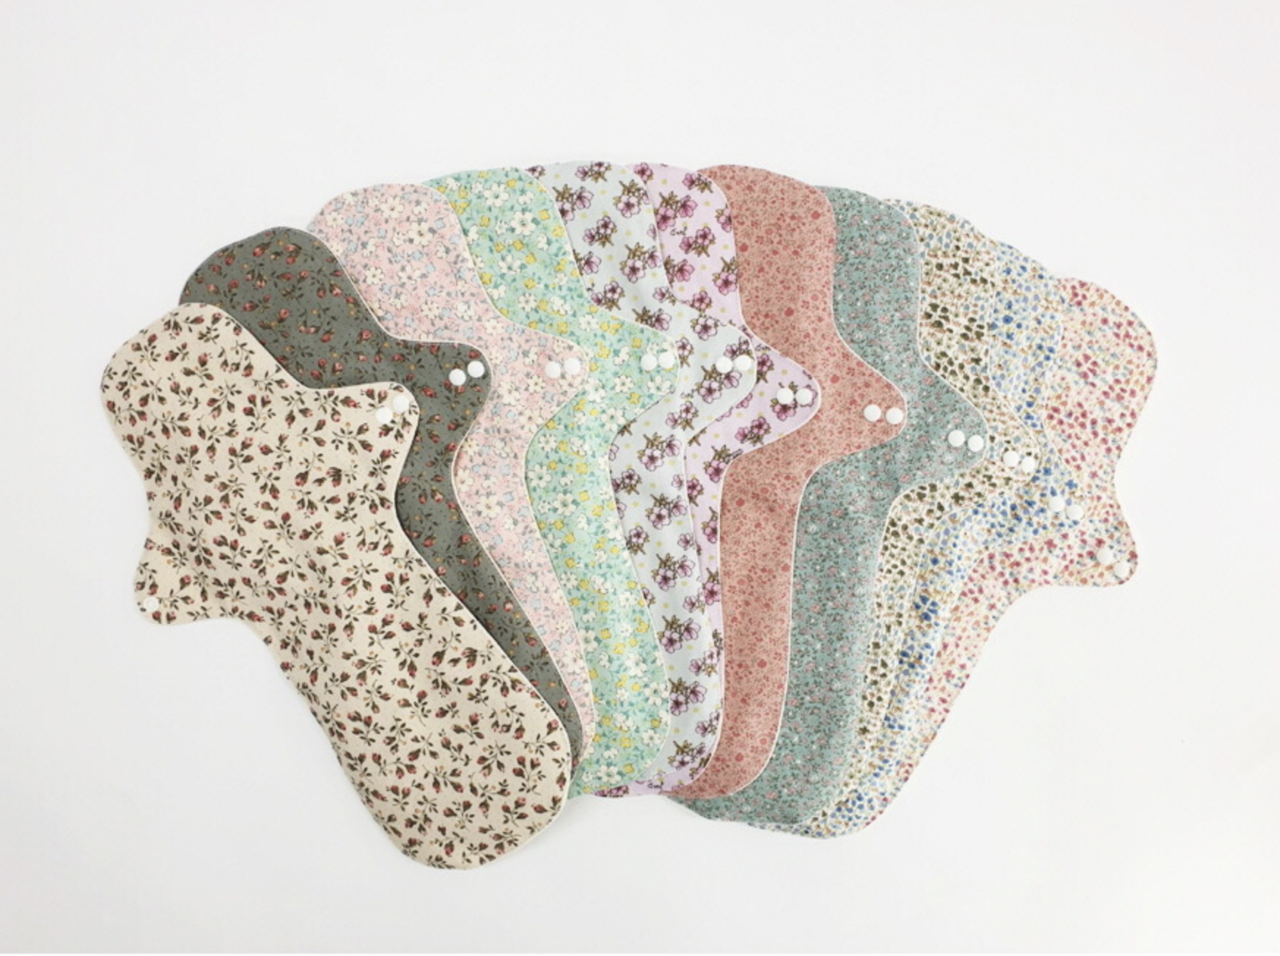 수미인 자활근로사업단이 제조하는 다회용 면 생리대는 다양한 꽃무늬 패턴으로 디자인했다. 수미인 제공